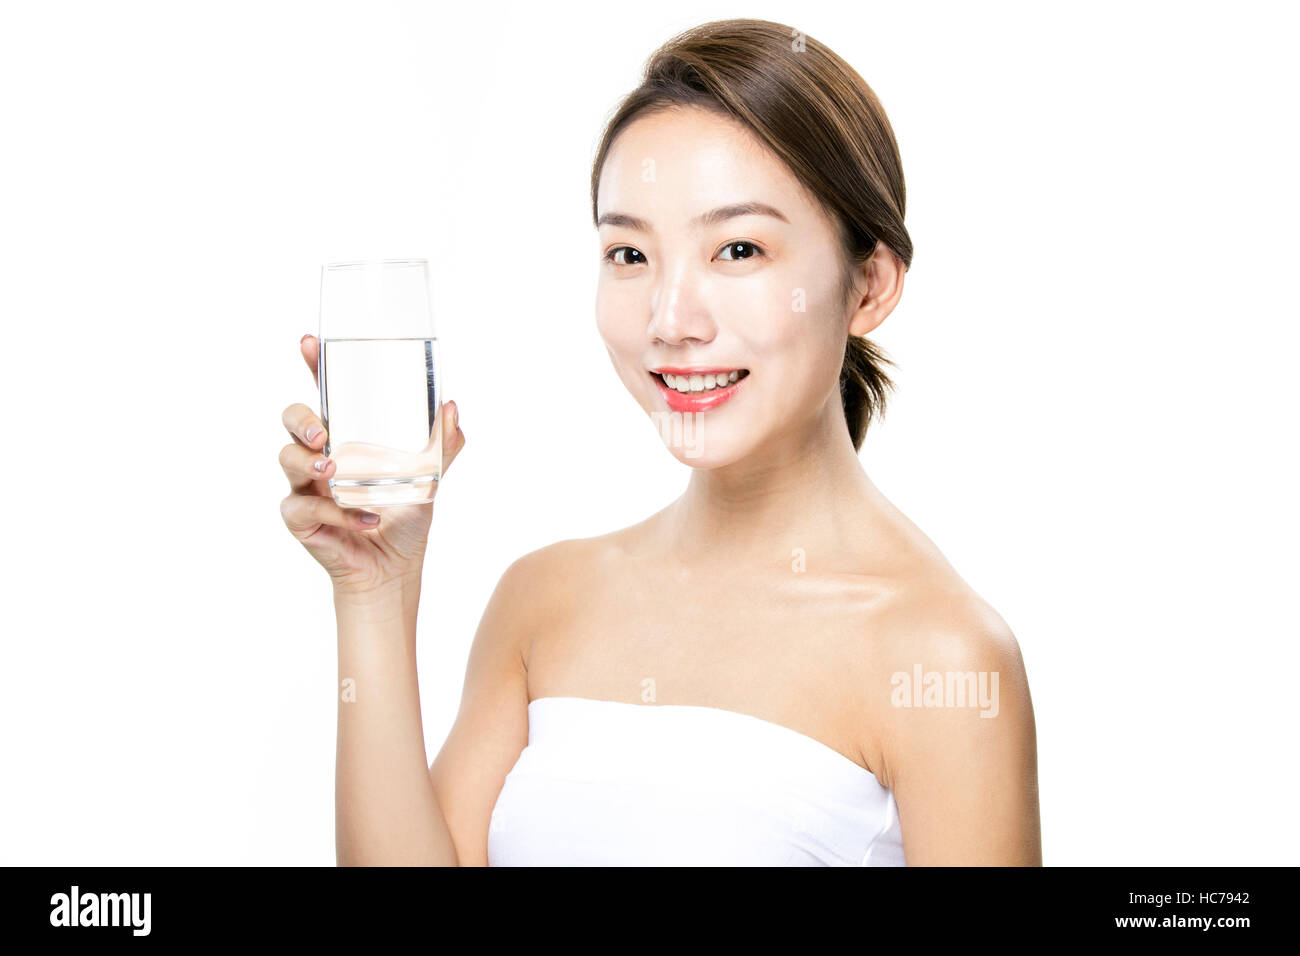 Portrait de jeune femme souriante avec de l'eau Banque D'Images